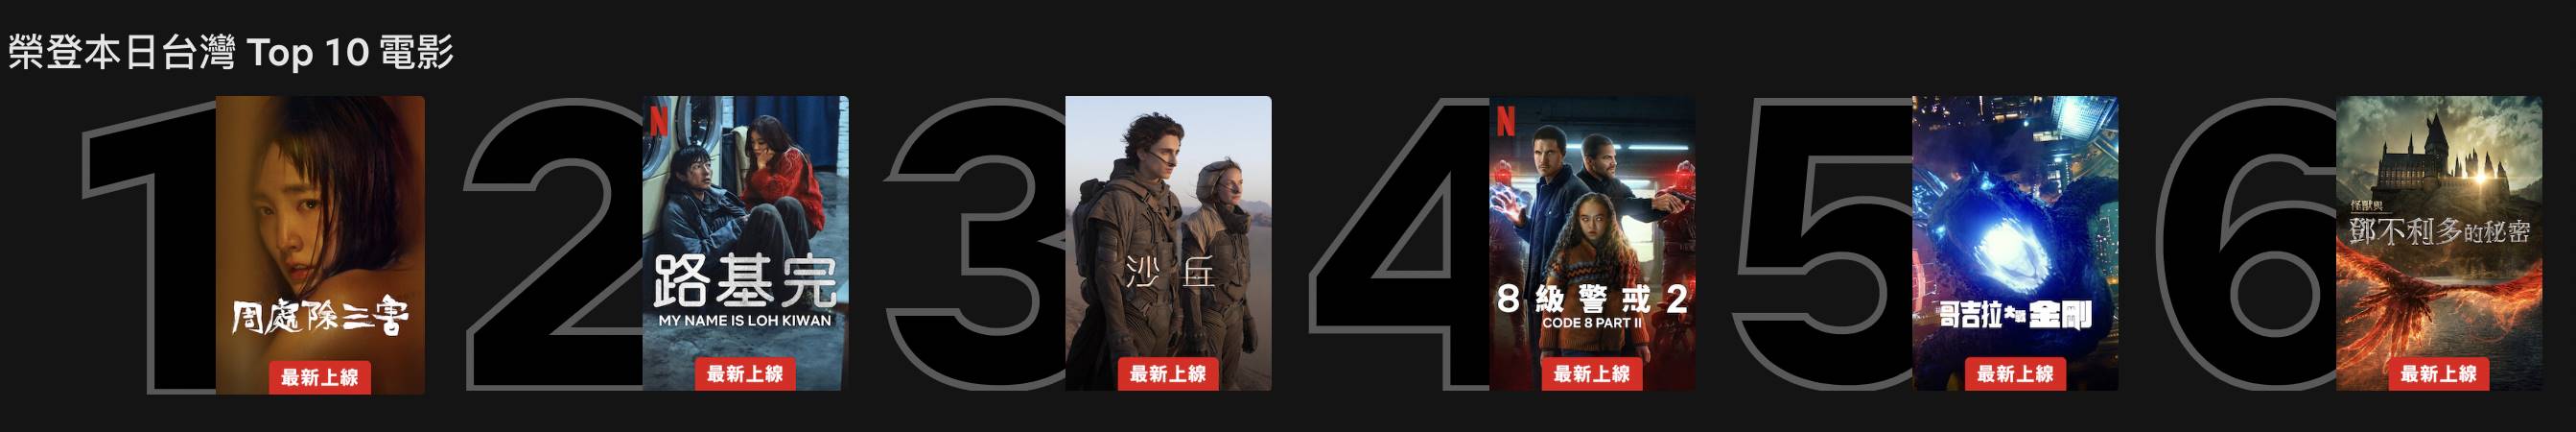 《周楚除三害》榮登Netflix影集台灣Top10電影排行榜冠軍。